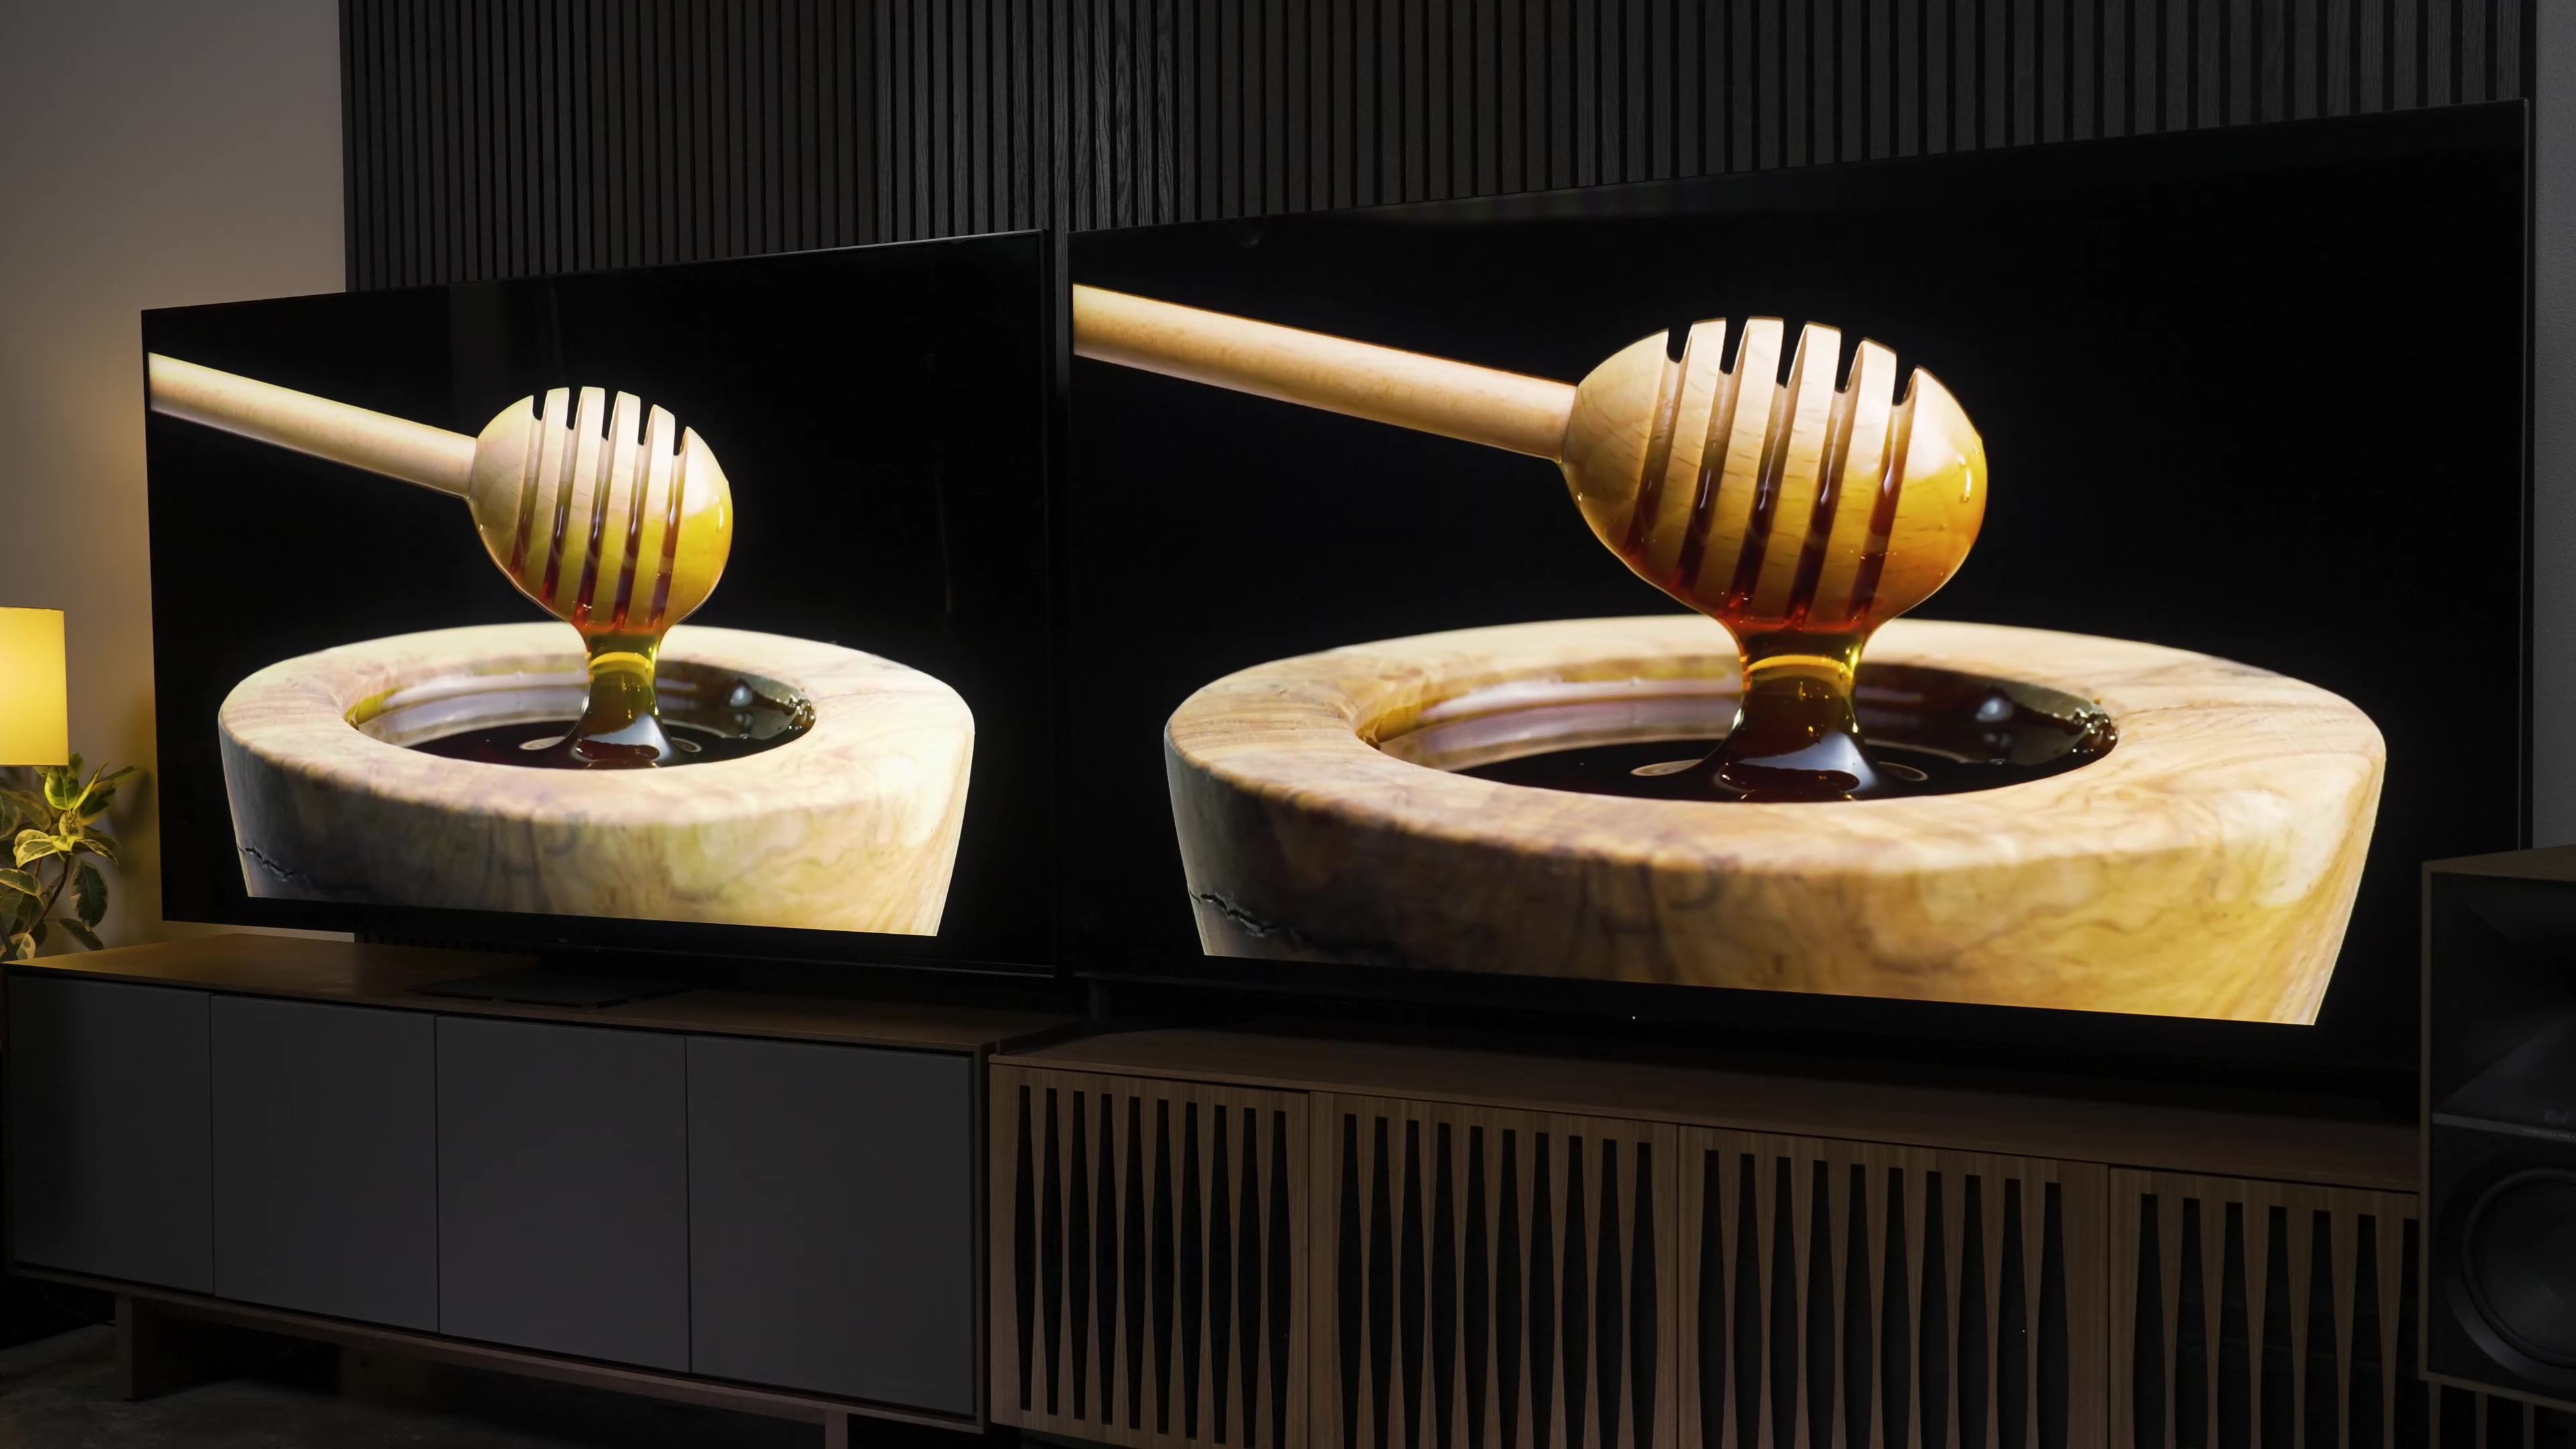 Comparación lado a lado entre Sony Bravia X95L y TCL QM8 que muestra una escena de lloviznas de miel saliendo de recipientes de miel.